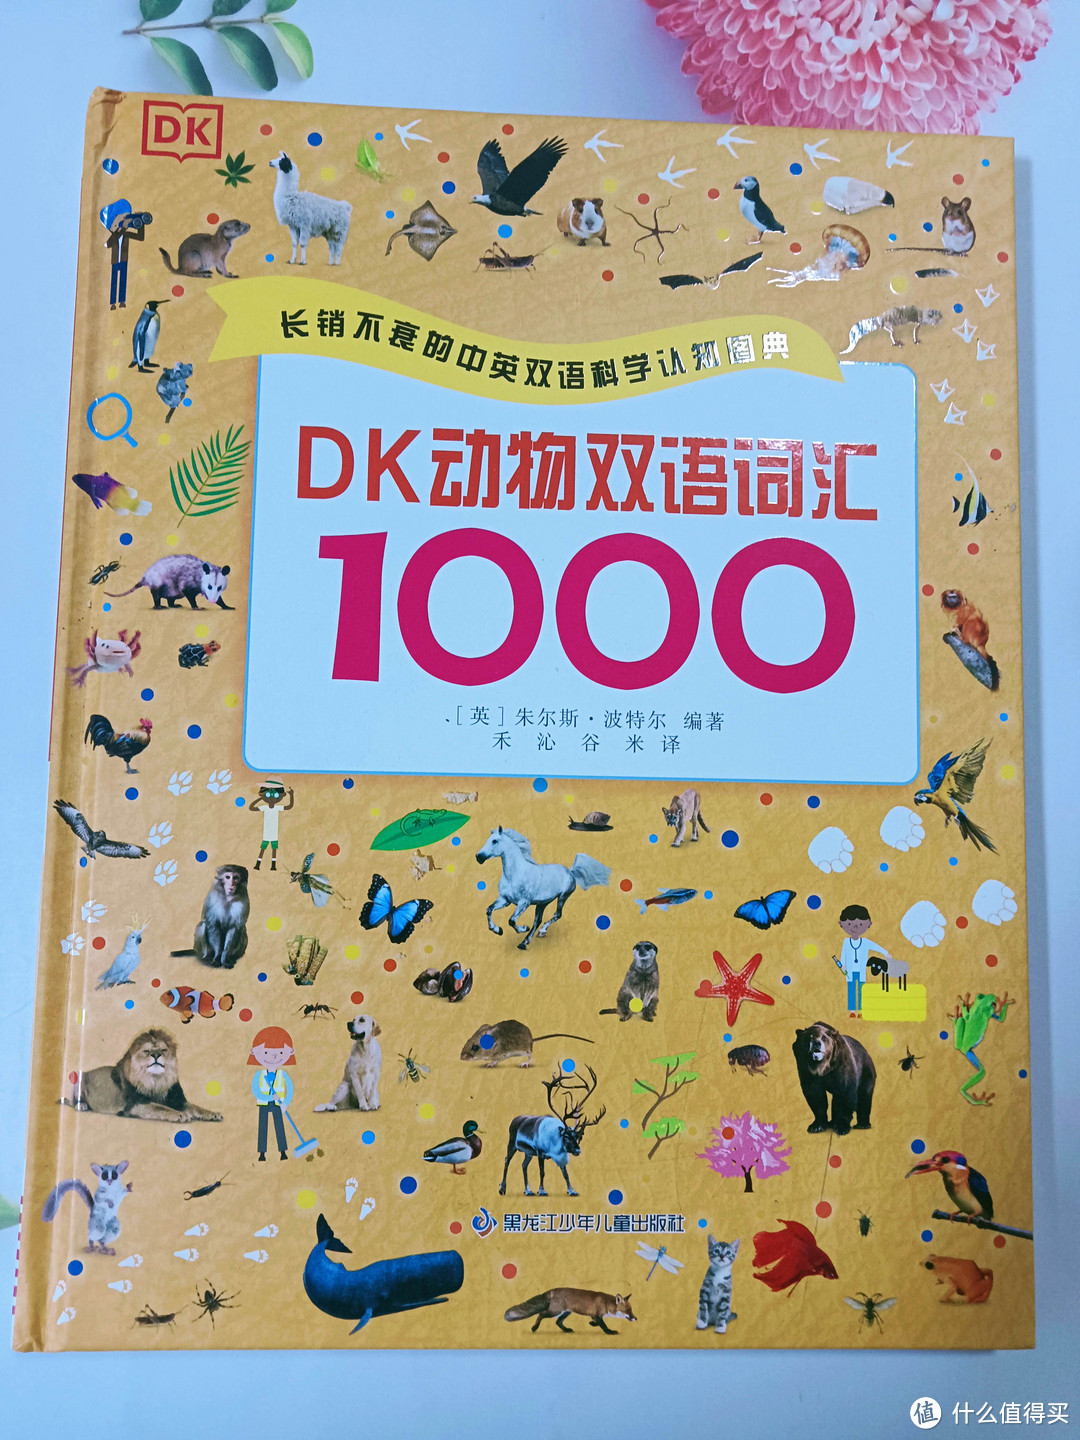 《DK动物双语词汇1000》：探索动物世界，轻松学习英语